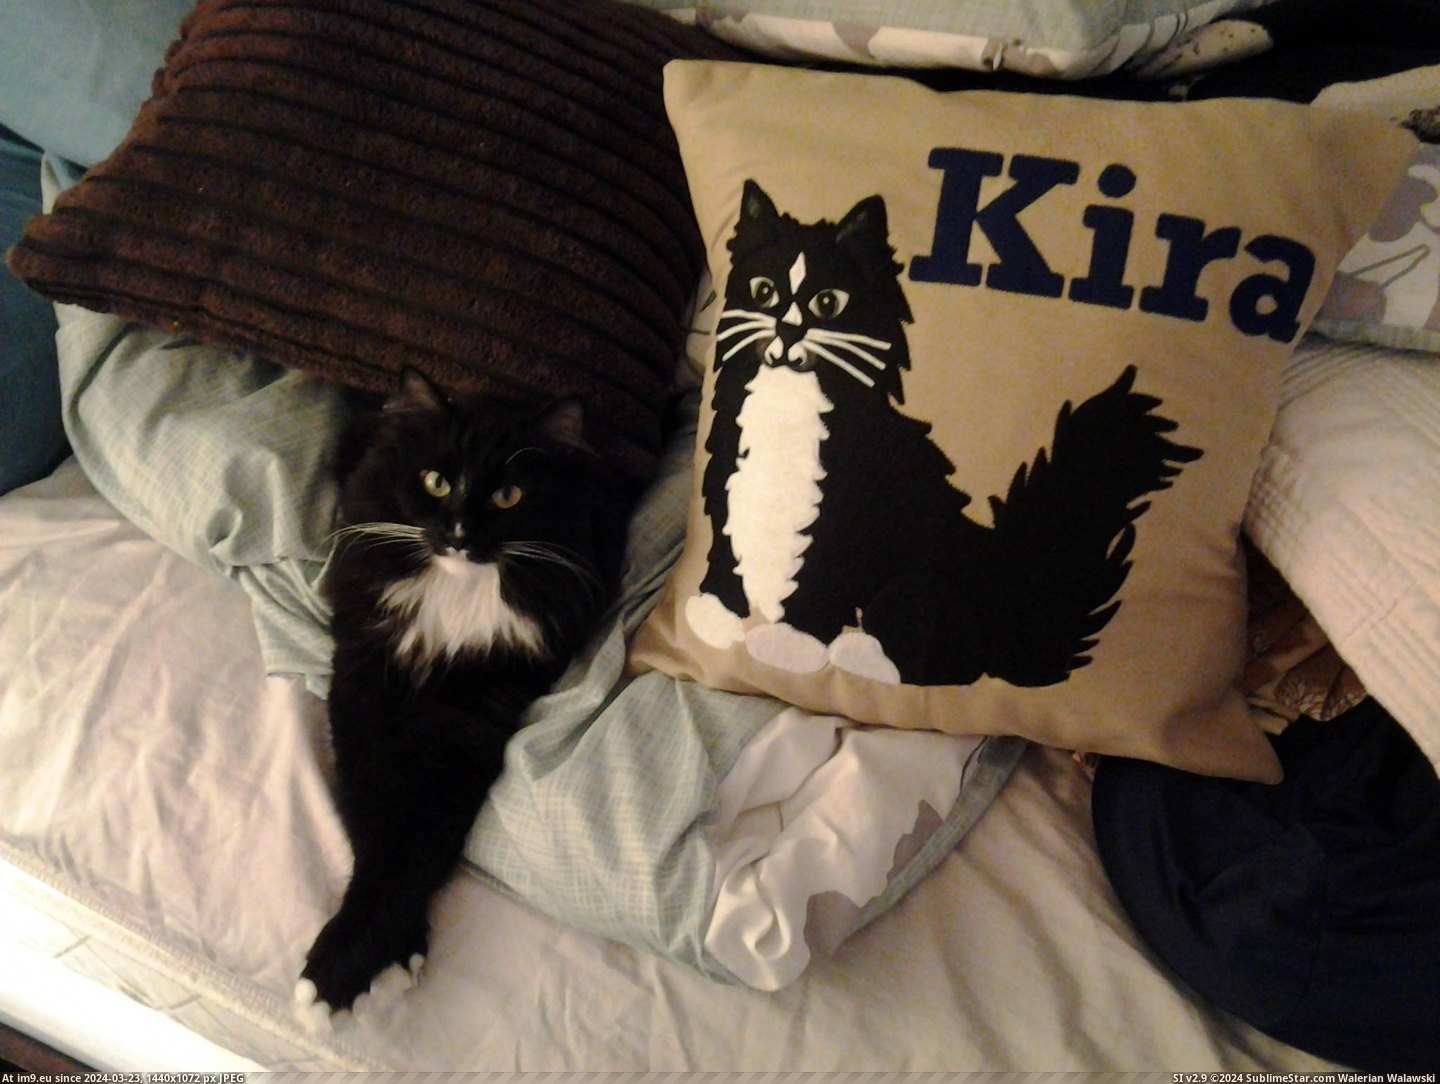 #Cats #Kira #Pillow #Posing [Cats] Kira posing next to her pillow Pic. (Image of album My r/CATS favs))